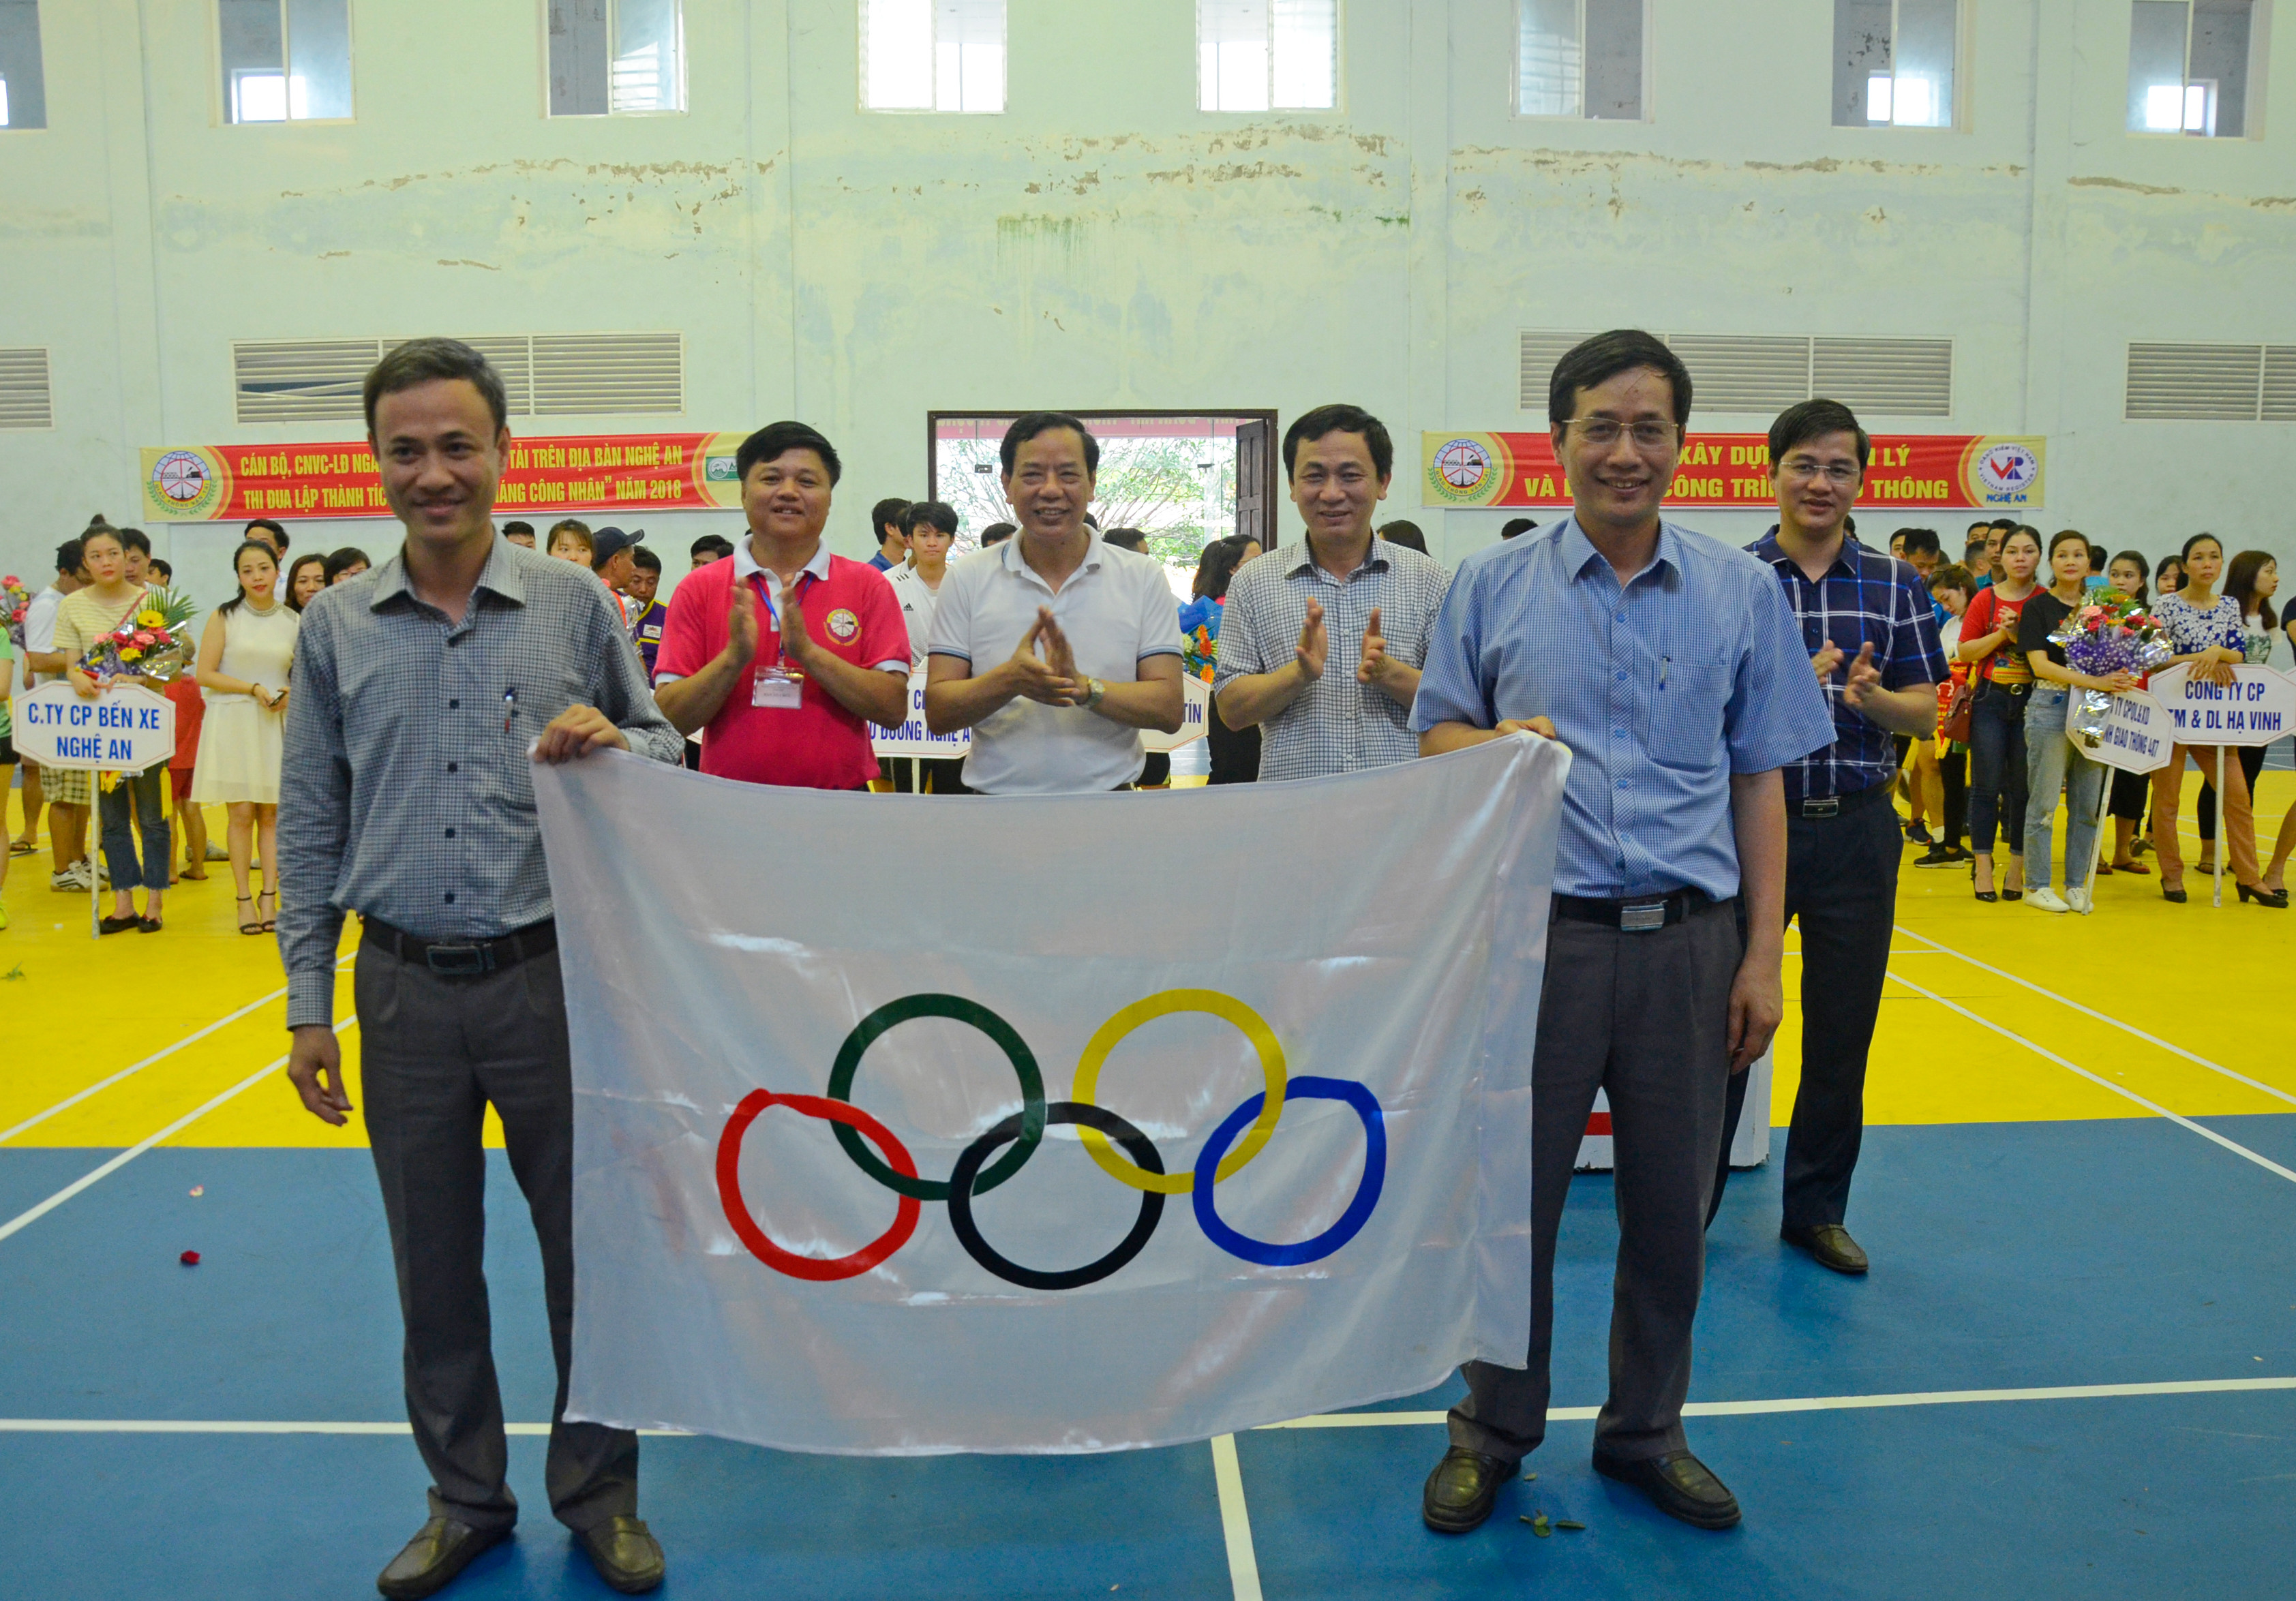 Trao cờ lưu niệm cho đơn vị đăng cai tổ chức Hội thao ngành Giao thông vận tải năm 2019. Ảnh Thanh Lê